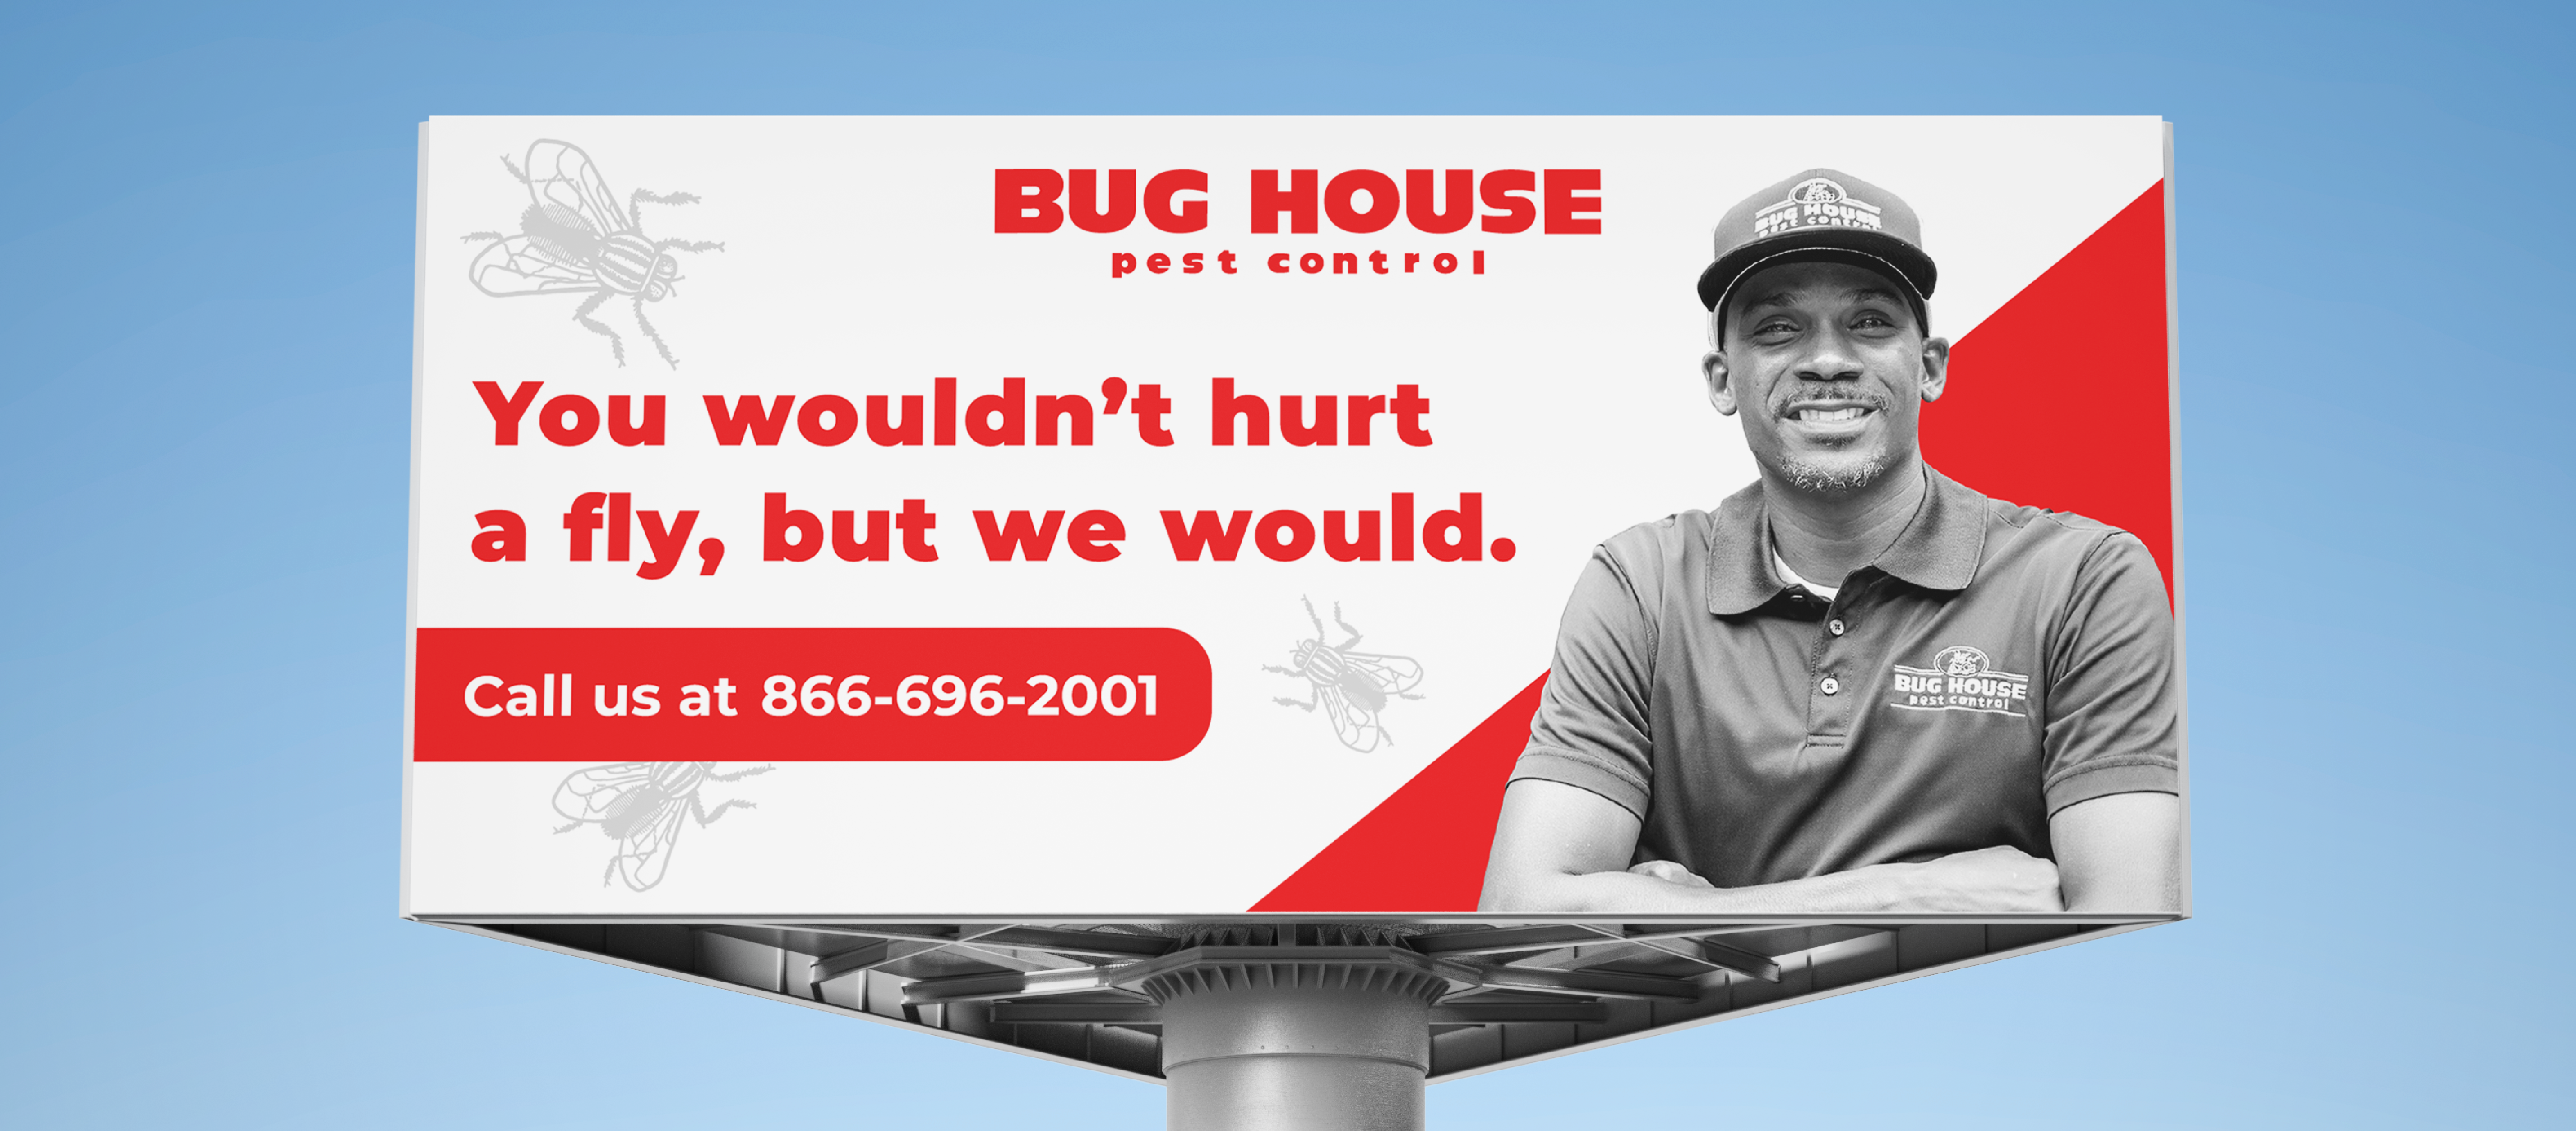 Bug House photos-05